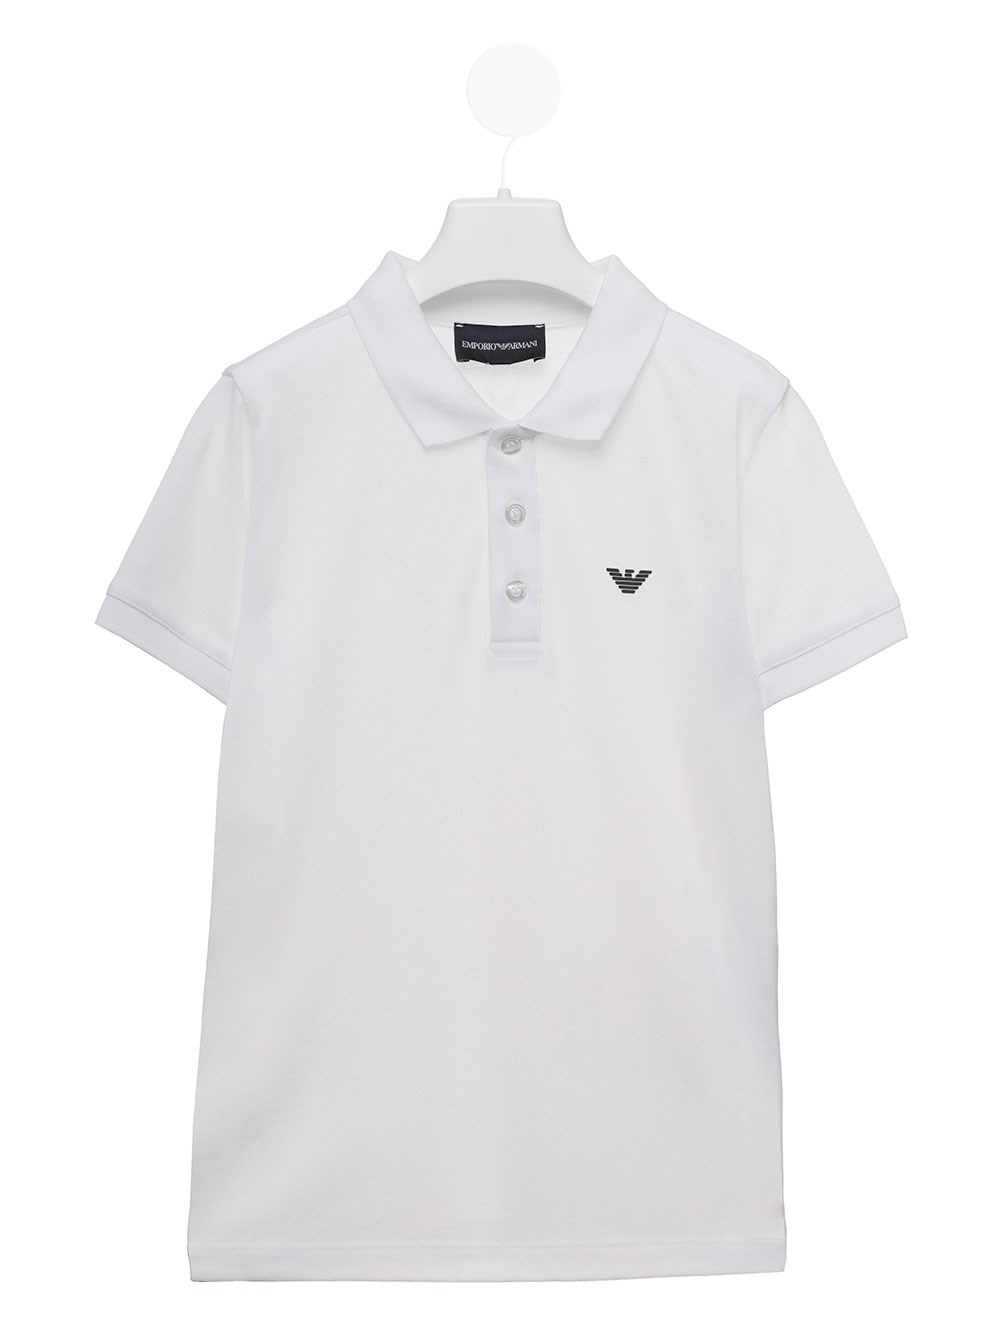 Emporio Armani Kids Boy's White Polo Shirt with Logo White available on ...